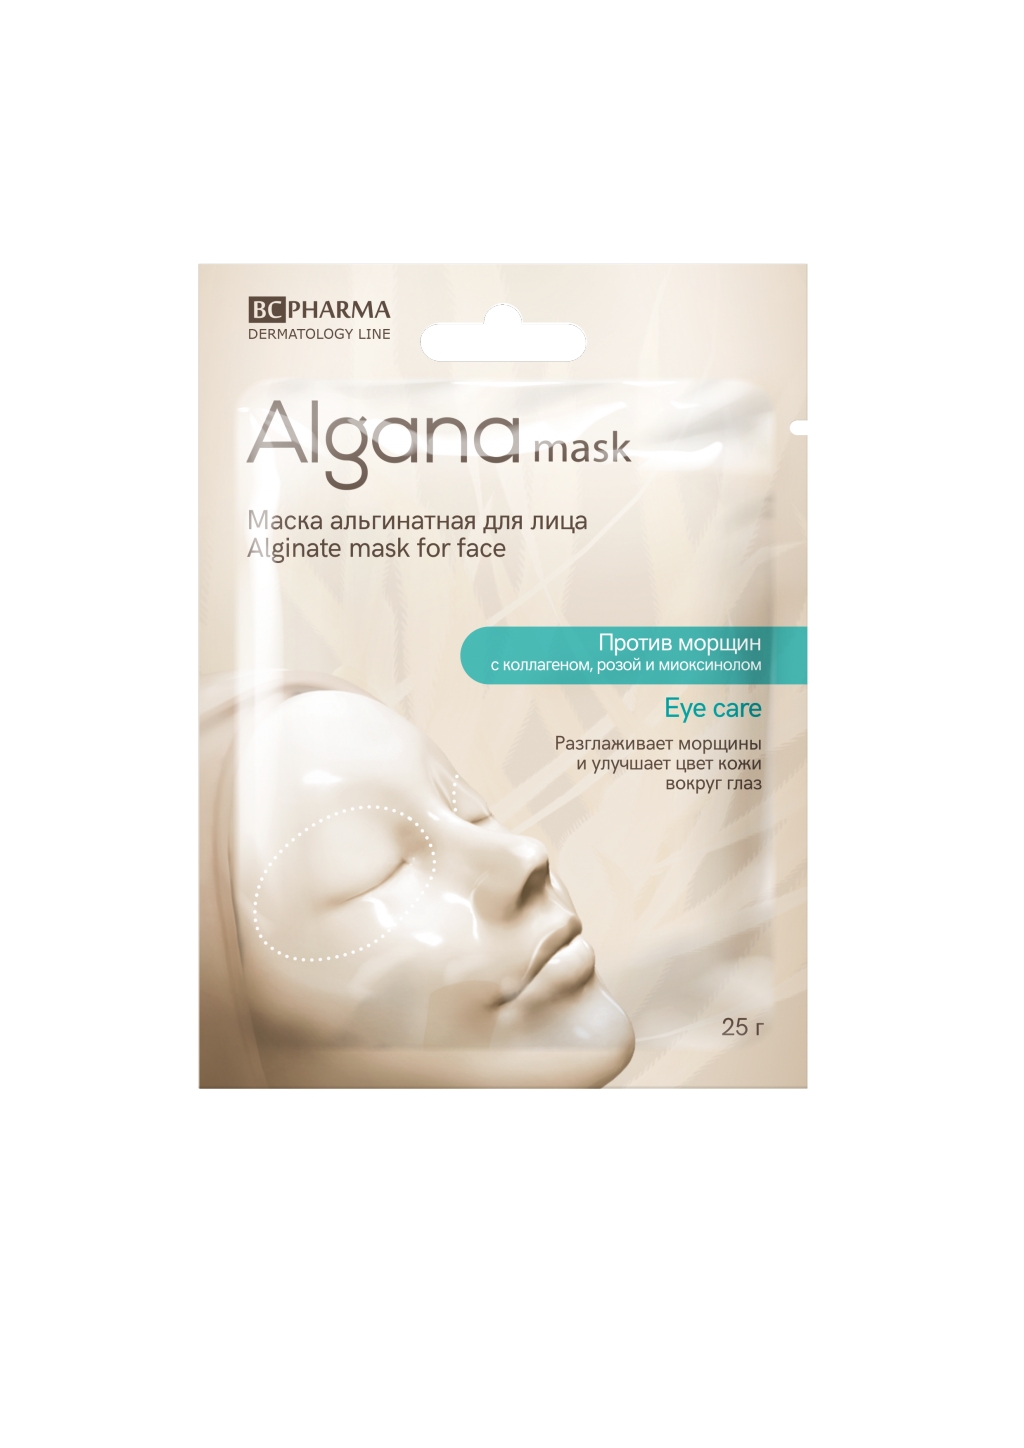 Альгинатная маска от Alganamask для кожи вокруг глаз "Skin Rescue" отзывы